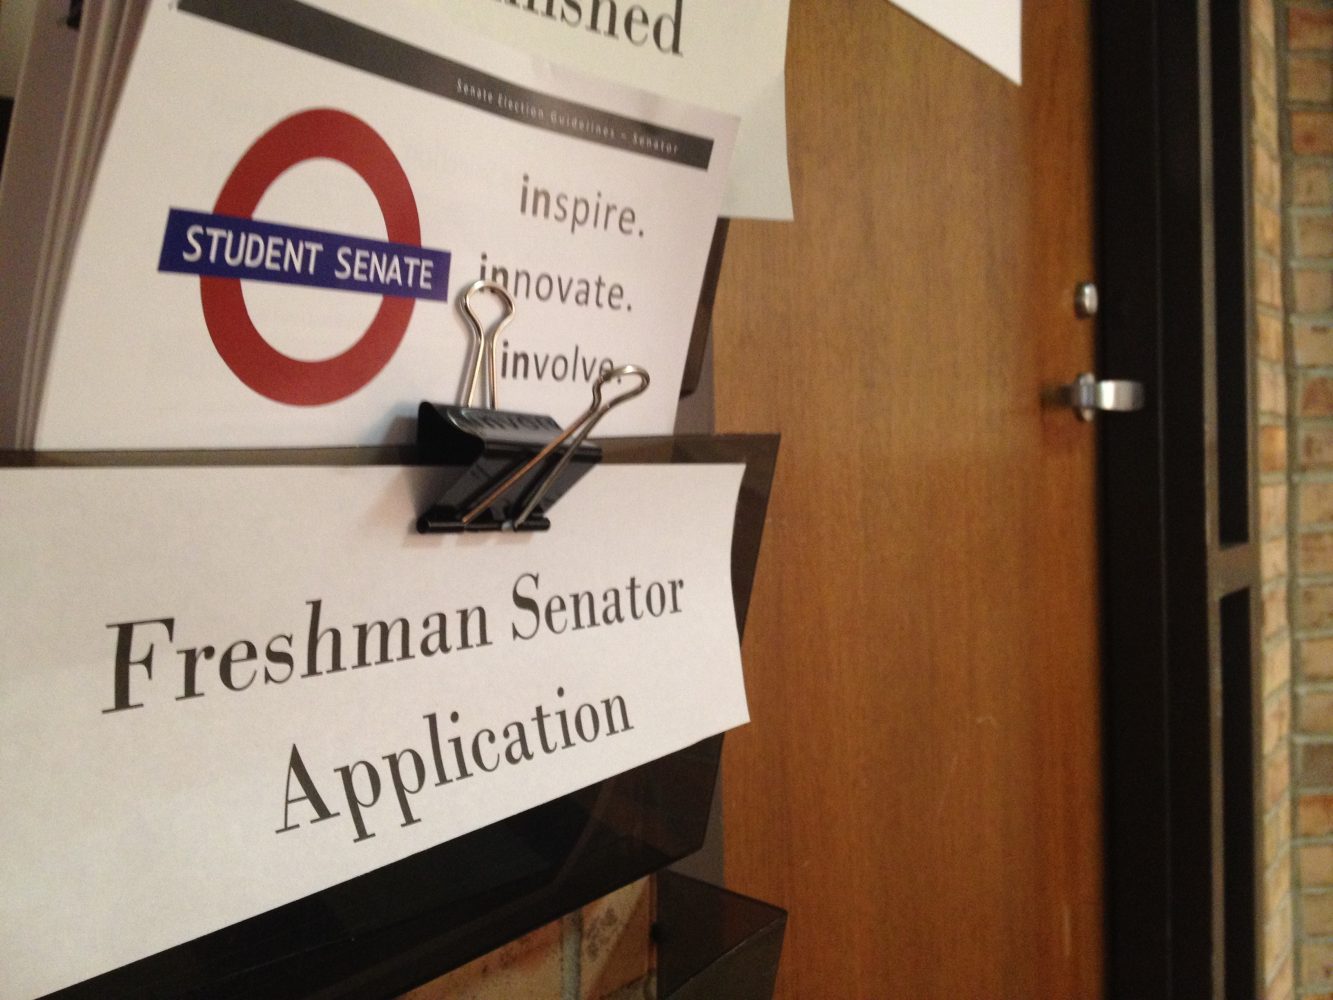 Student senate to choose three freshmen senators